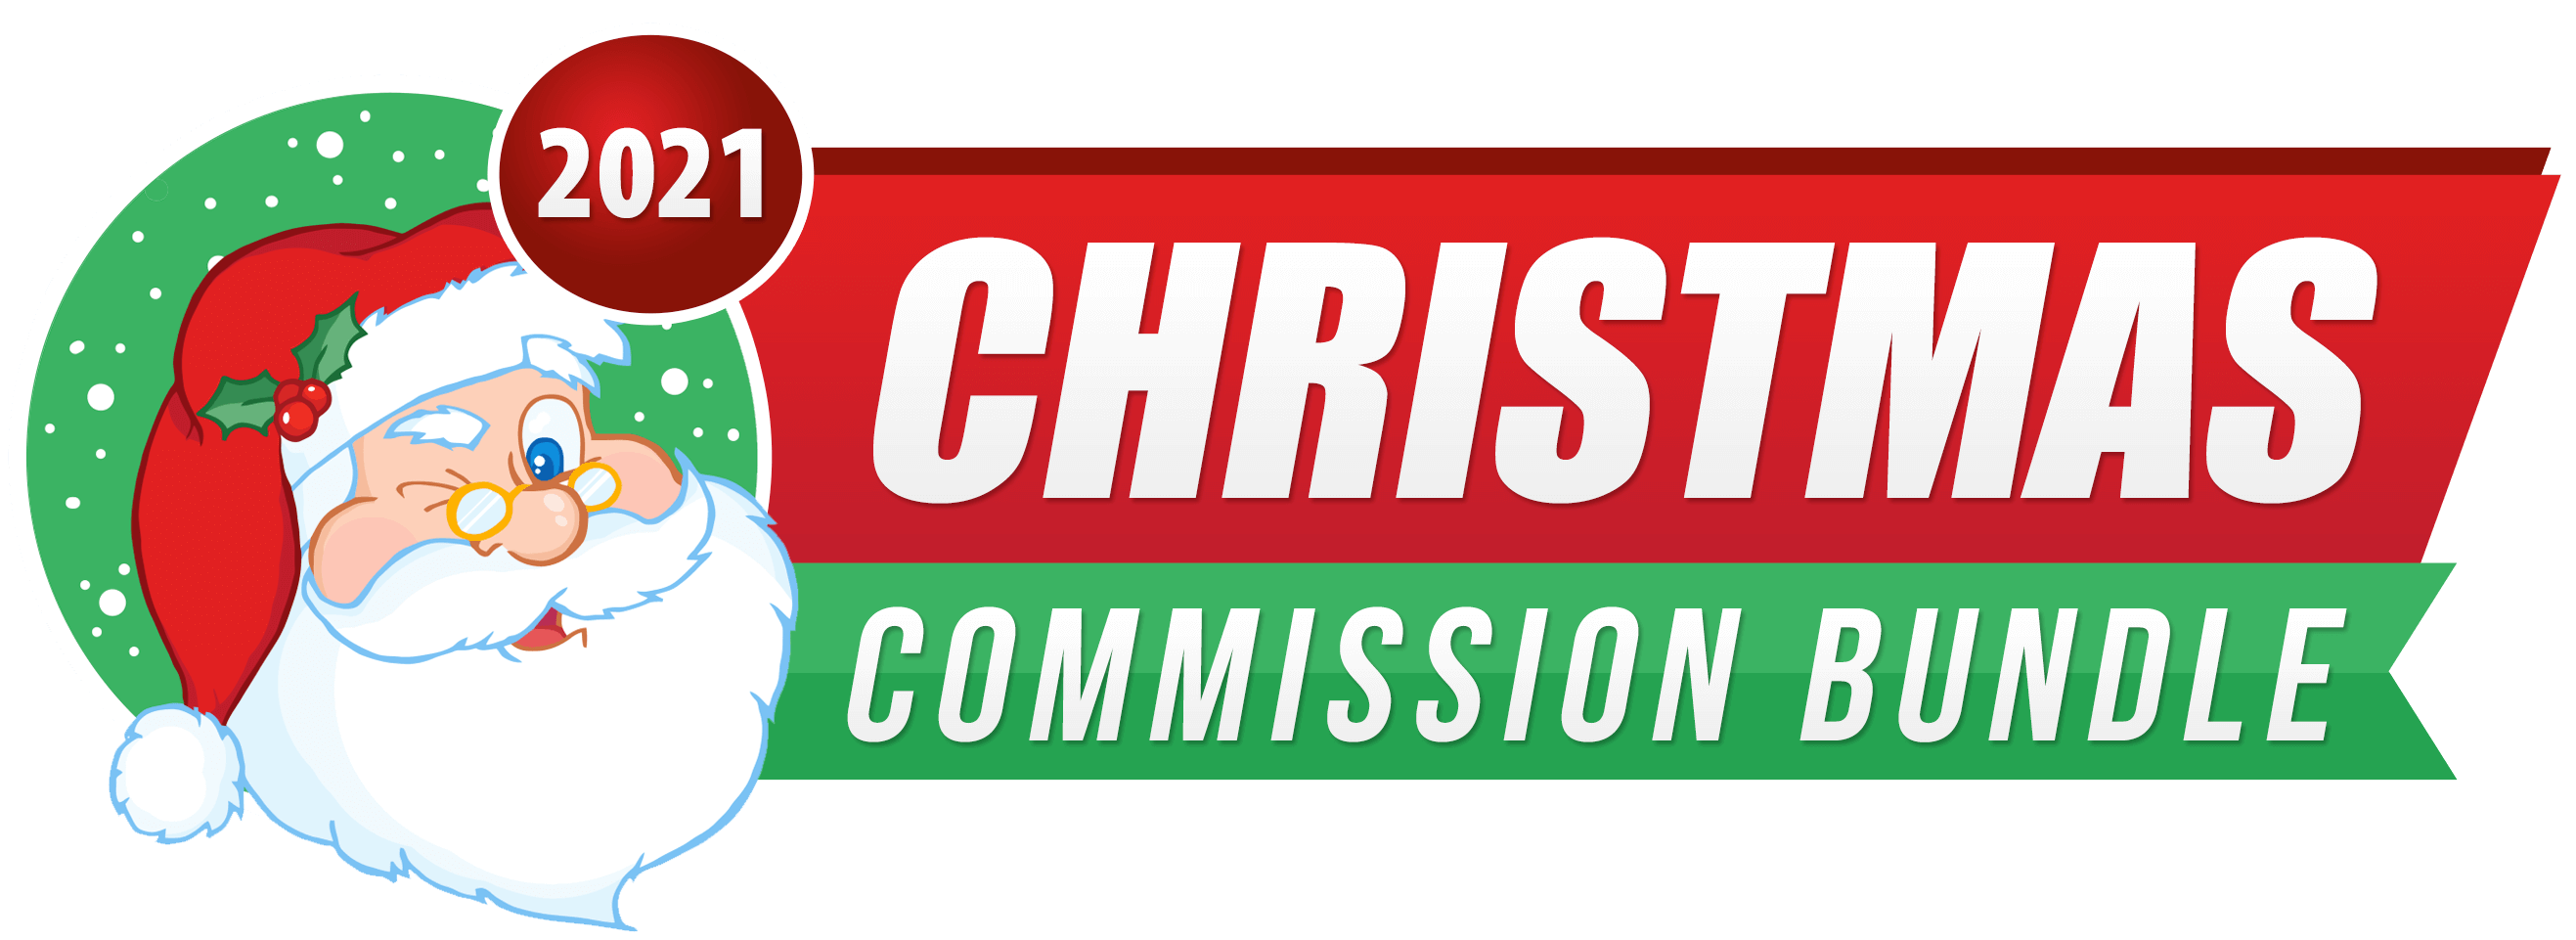 2021 Christmas Commission Bundle Review & Bonus